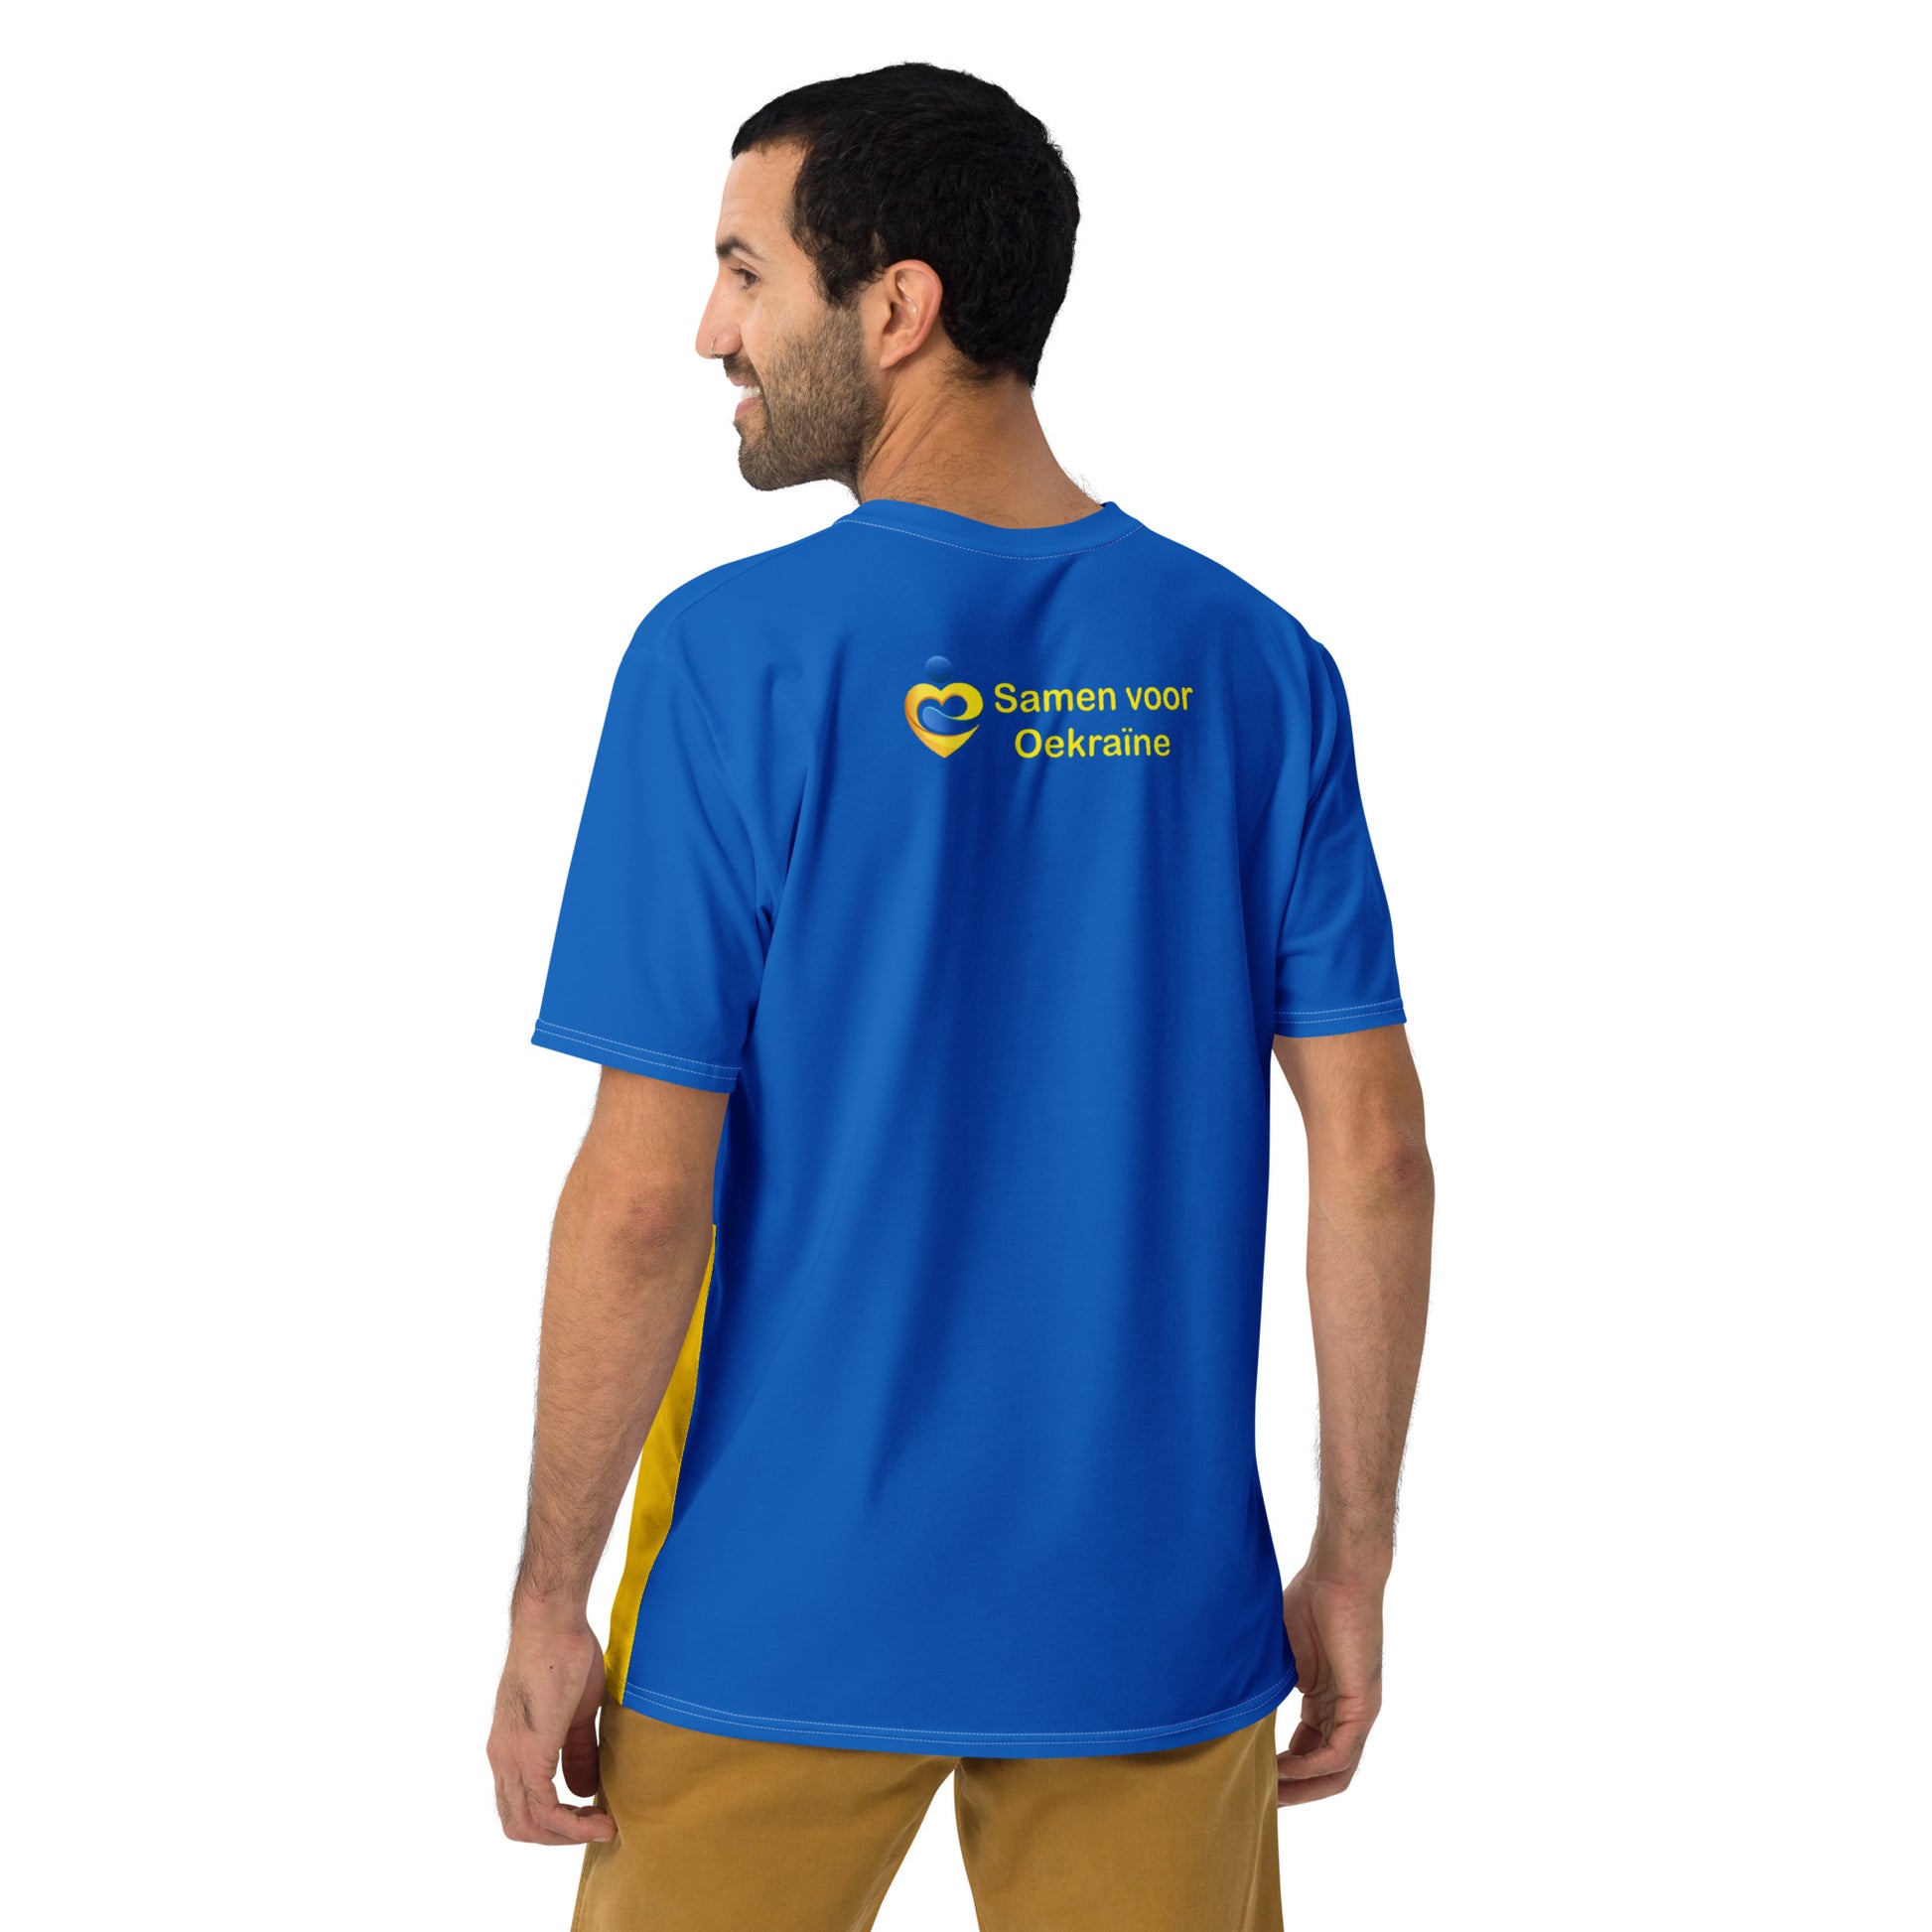 Foundation Together For Ukraine t-shirt for men